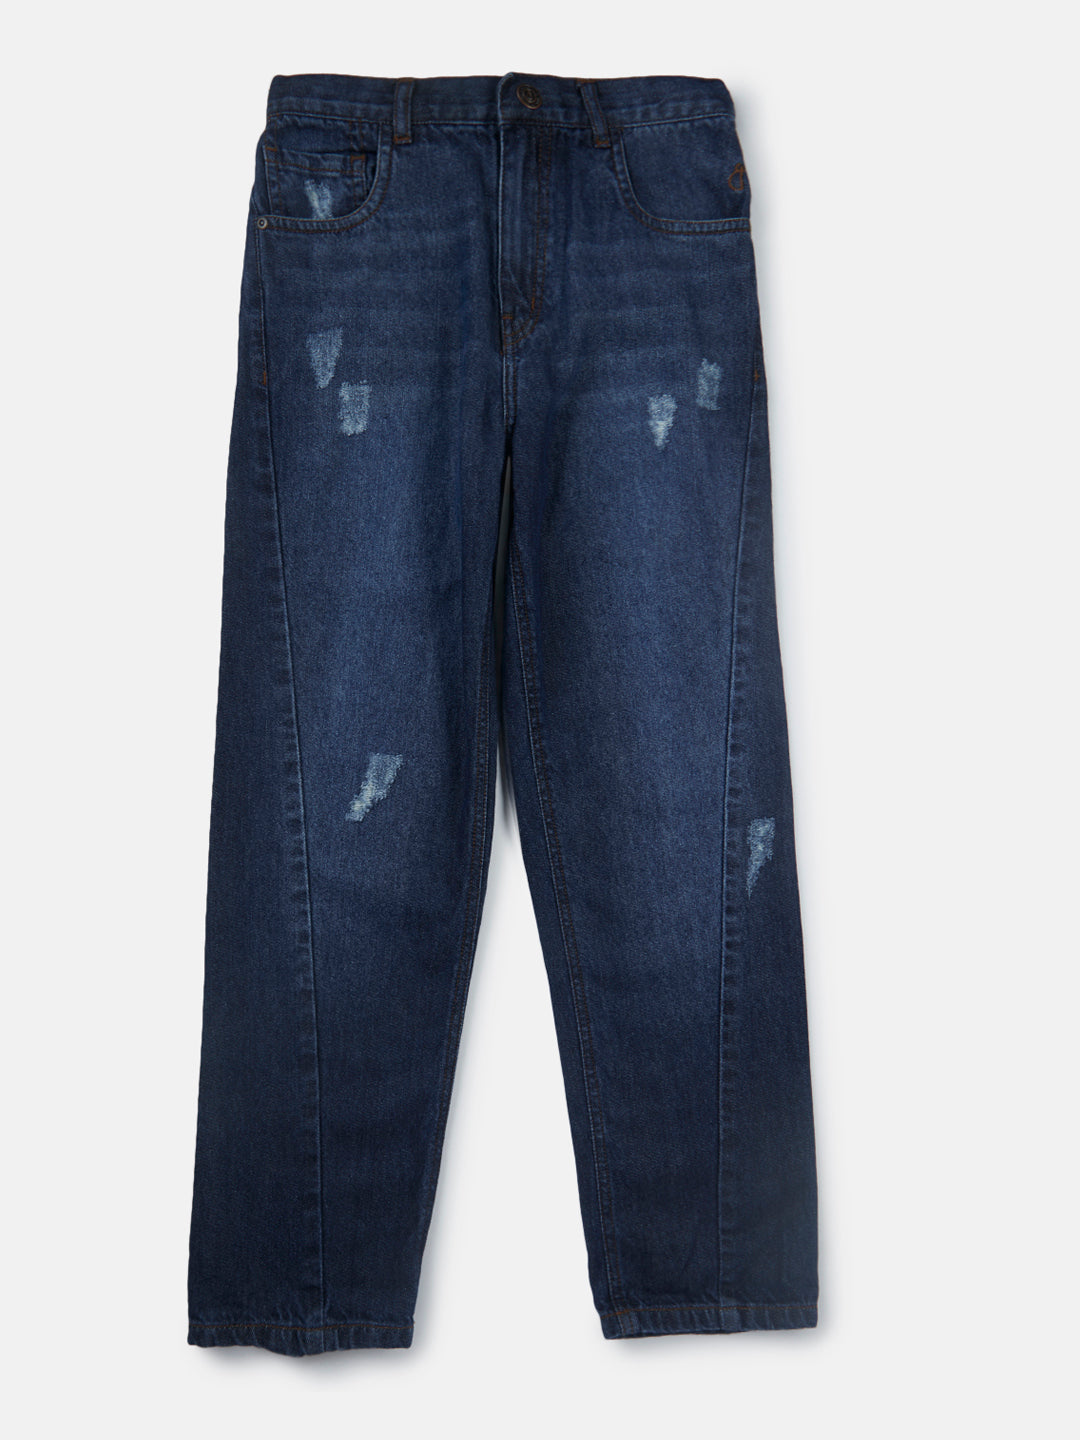 Boys Navy Blue Washed Denim Jeans